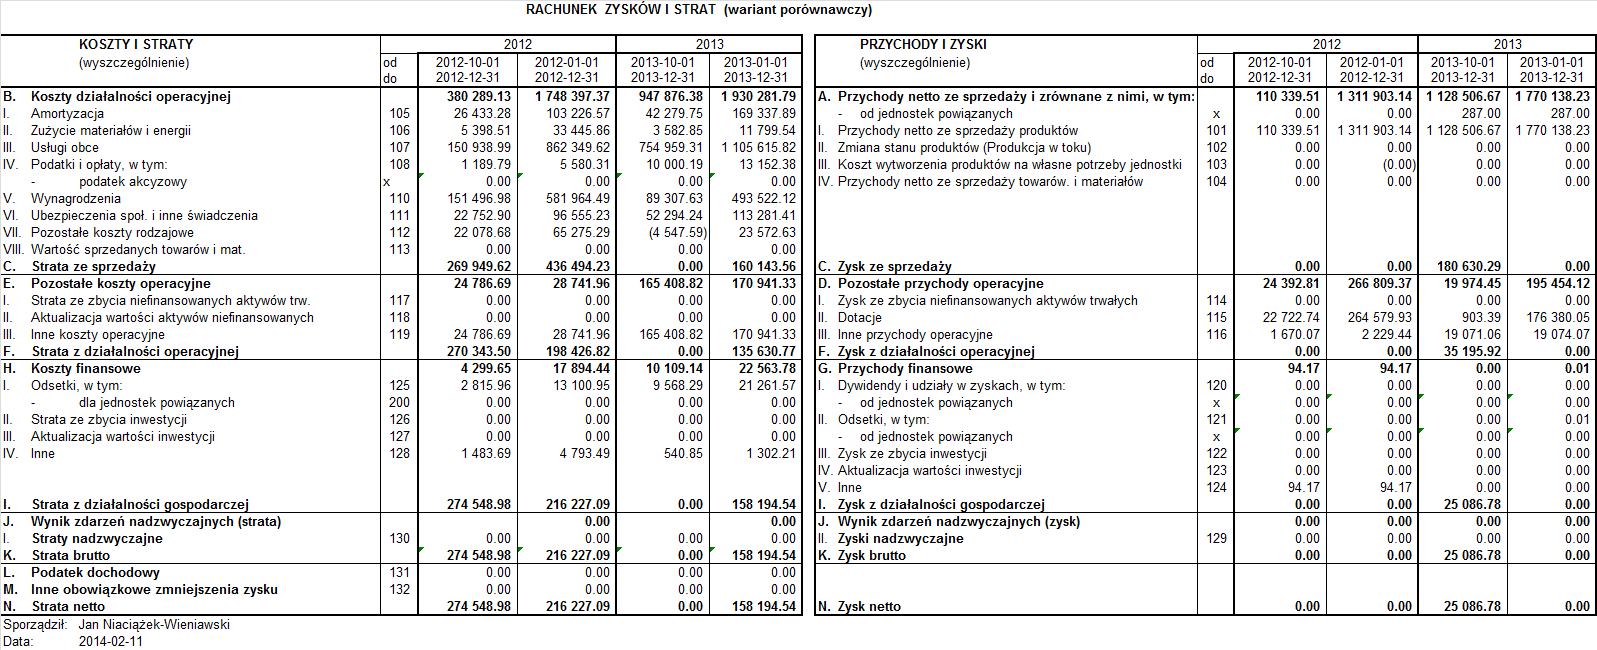 Dane finansowe Rachunek Zysko w i Strat za okres od 1